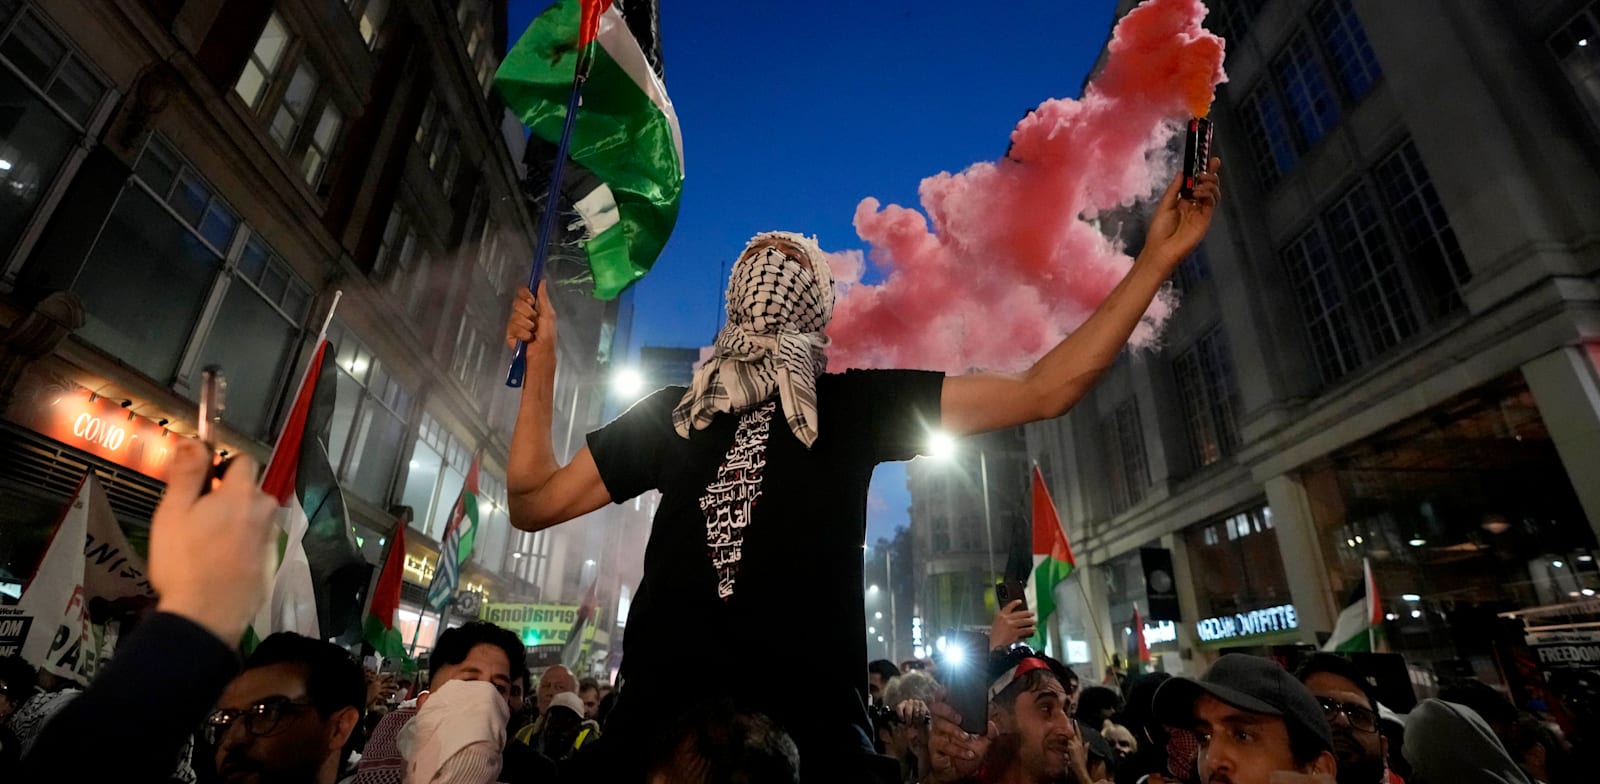 מפגינים פרו־פלסטינים בלונדון, השבוע / צילום: ap, Photo/Kirsty Wiggleswort